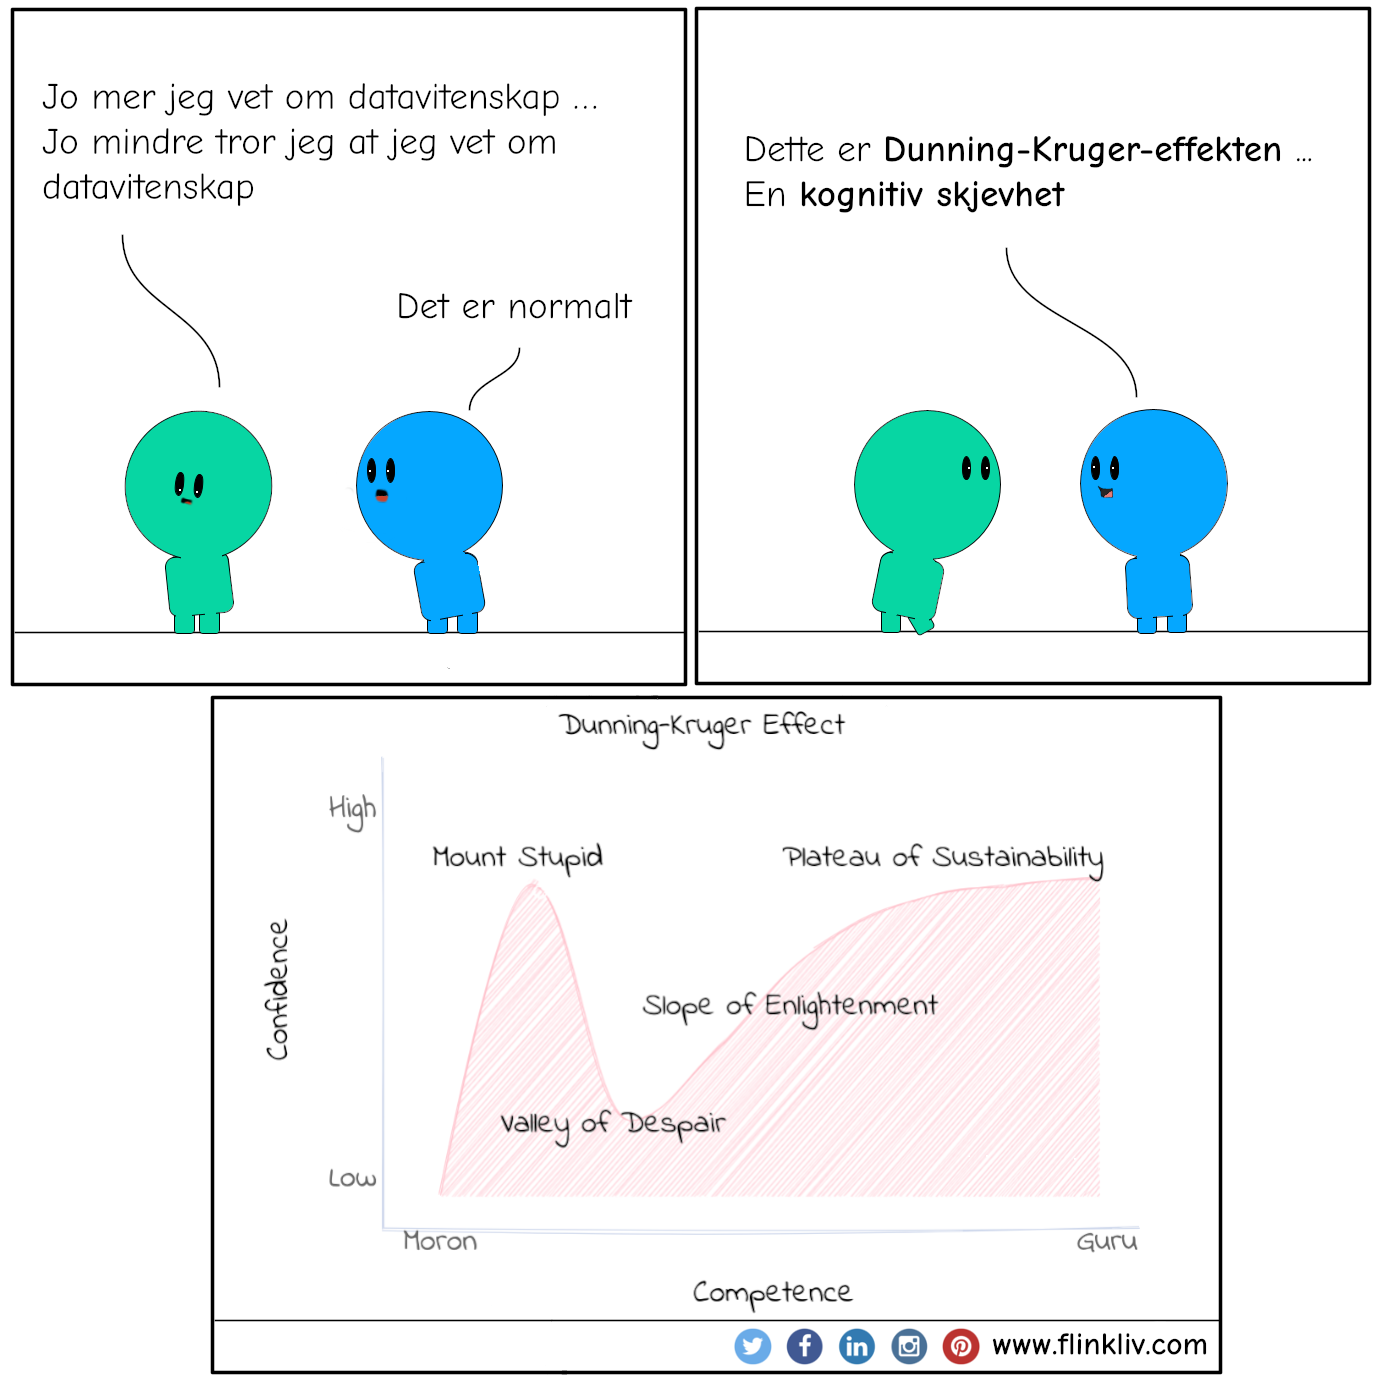 Samtale mellom A og B om Dunning-Kruger-effekten.
            A: Jo mer jeg vet om datavitenskap, jo mindre tror jeg at jeg vet om datavitenskap
            B: Det er normalt
            B: Dette er Dunning-Kruger-effekten, en kognitiv skjevhet.
			By flinkliv.com
                                     
              